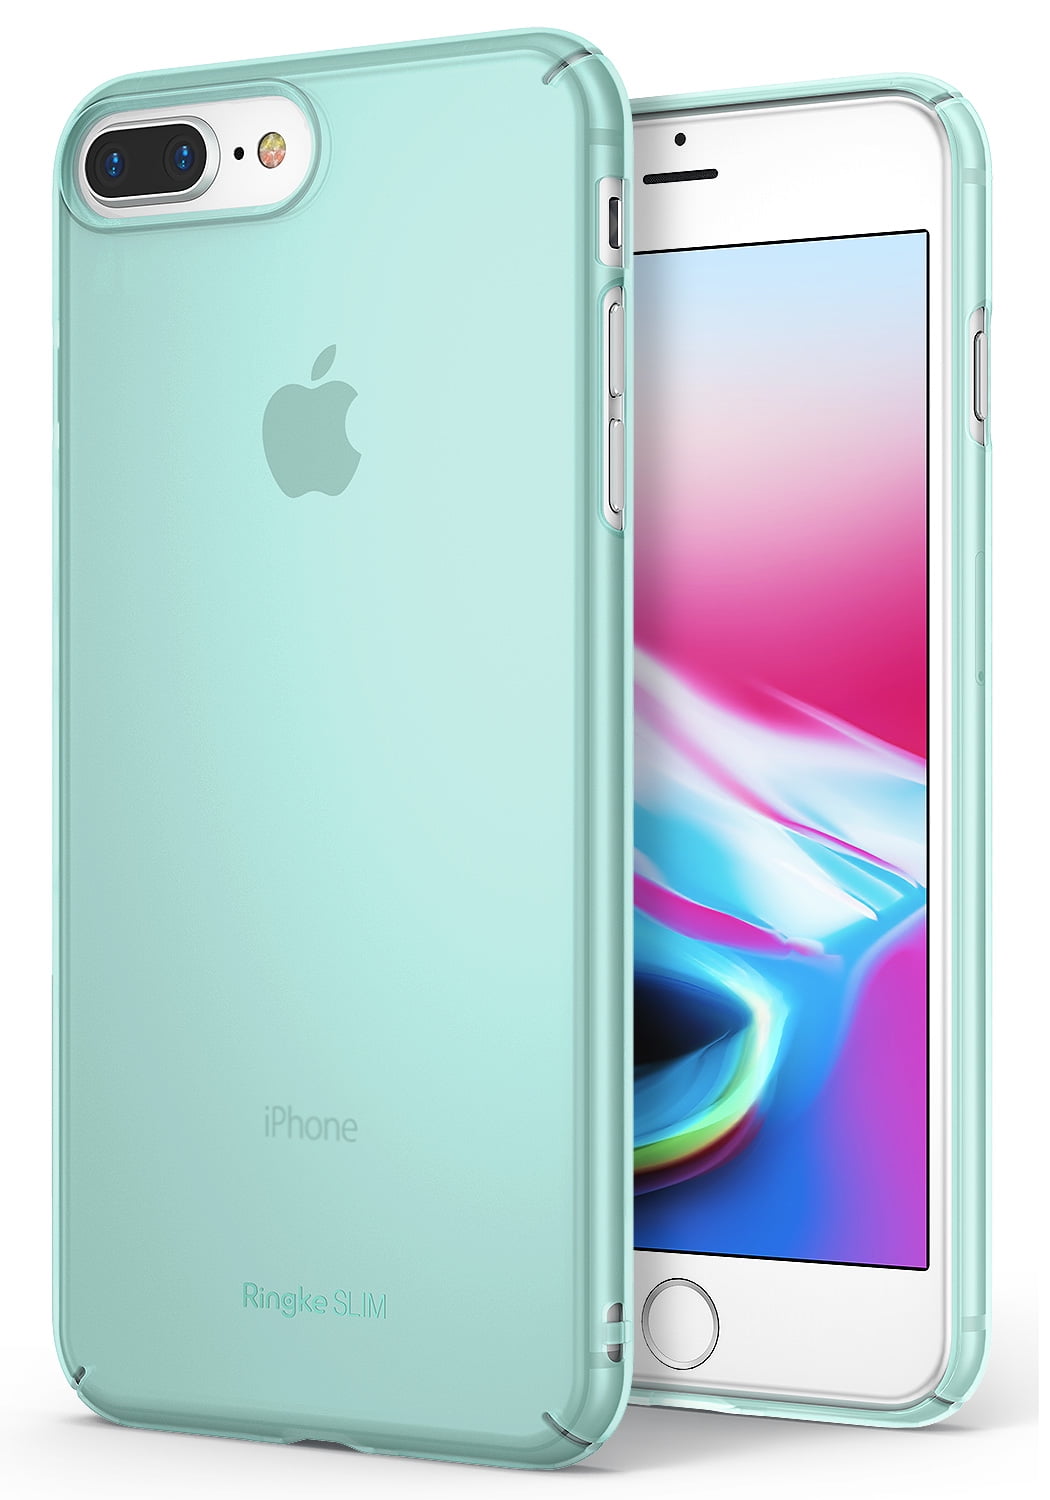 Apple iPhone 7 Plus / iPhone 8 Plus Phone Case, Ringke [Slim] SnugFit